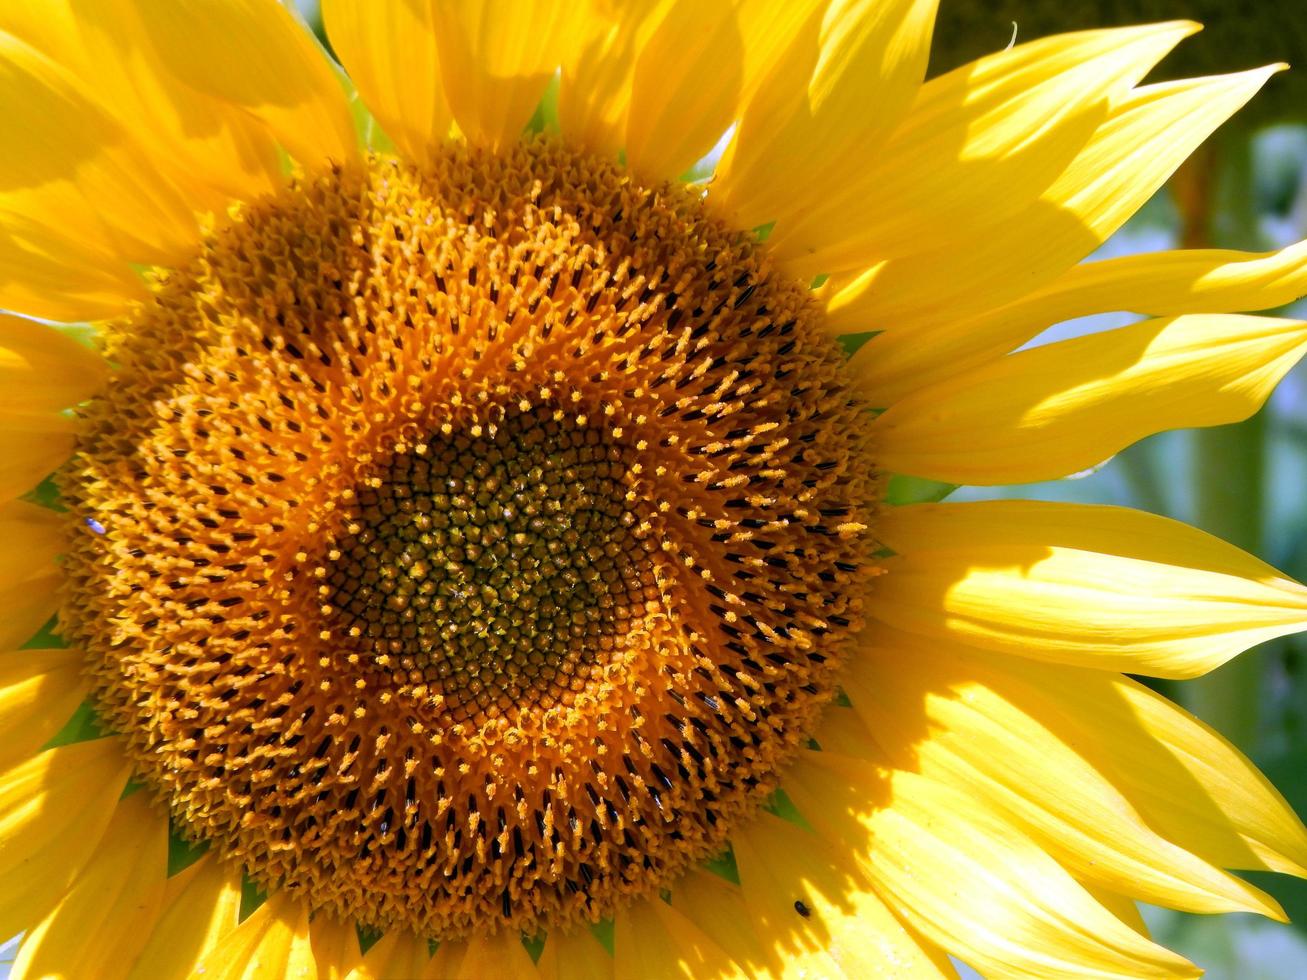 veld van zonnebloemen textuur foto